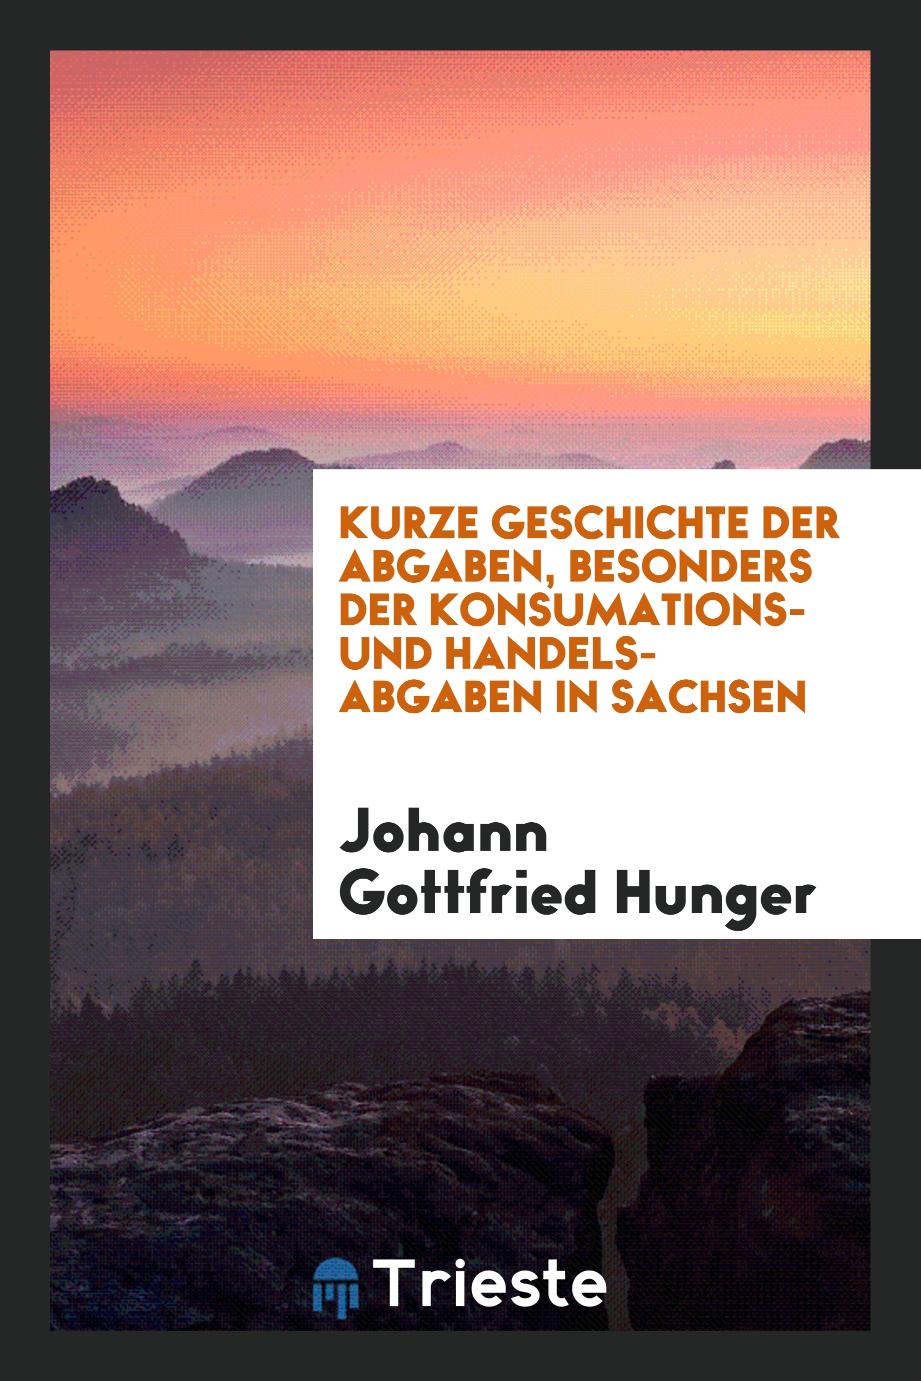 Johann Gottfried Hunger - Kurze Geschichte der Abgaben, besonders der Konsumations- und Handels-Abgaben in Sachsen